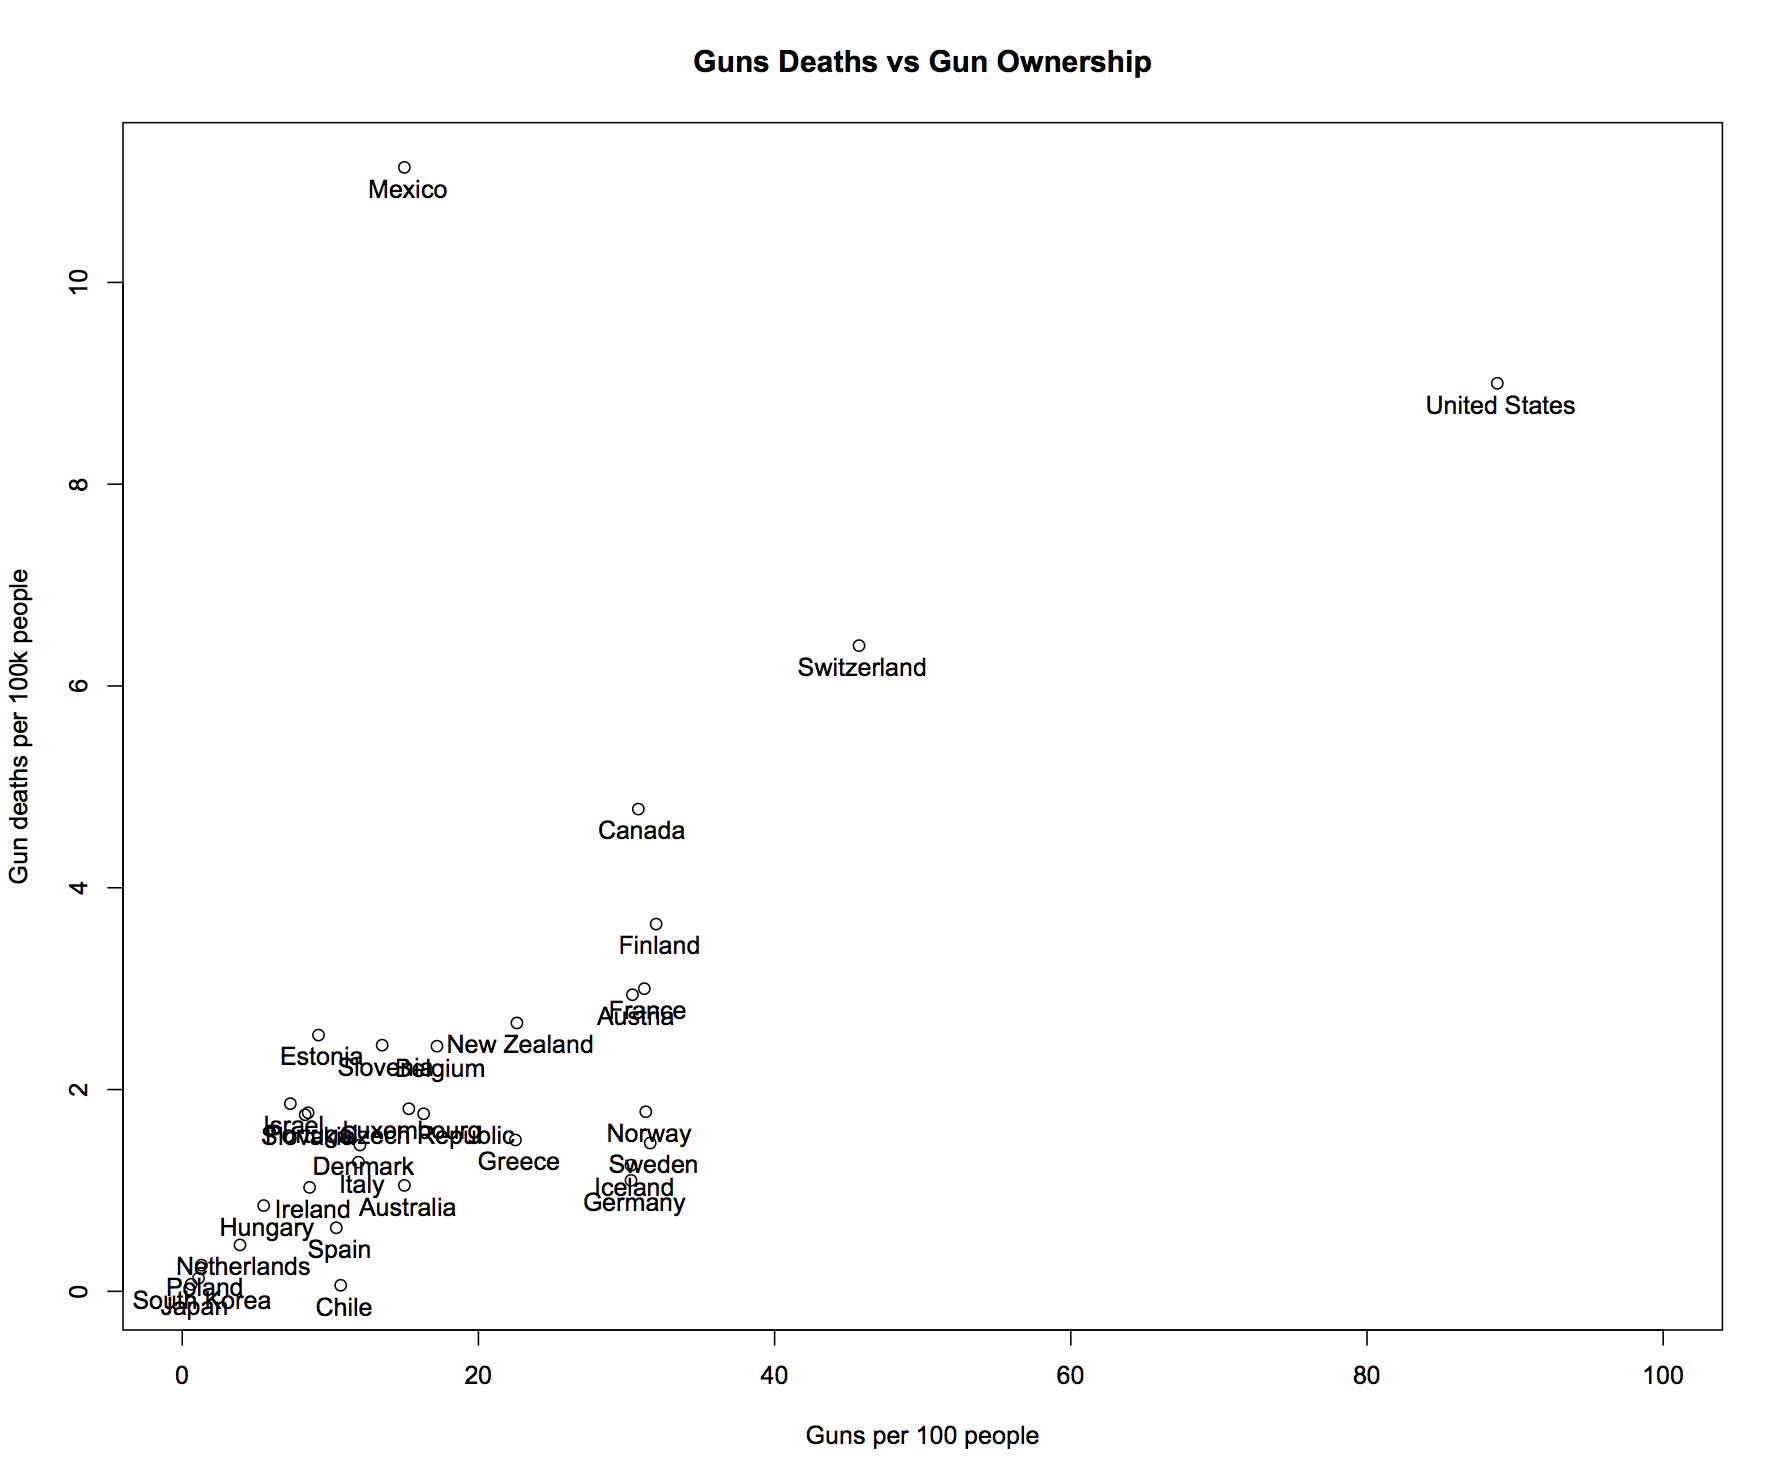 Gun deaths vs. Gun Ownership for OECD countries